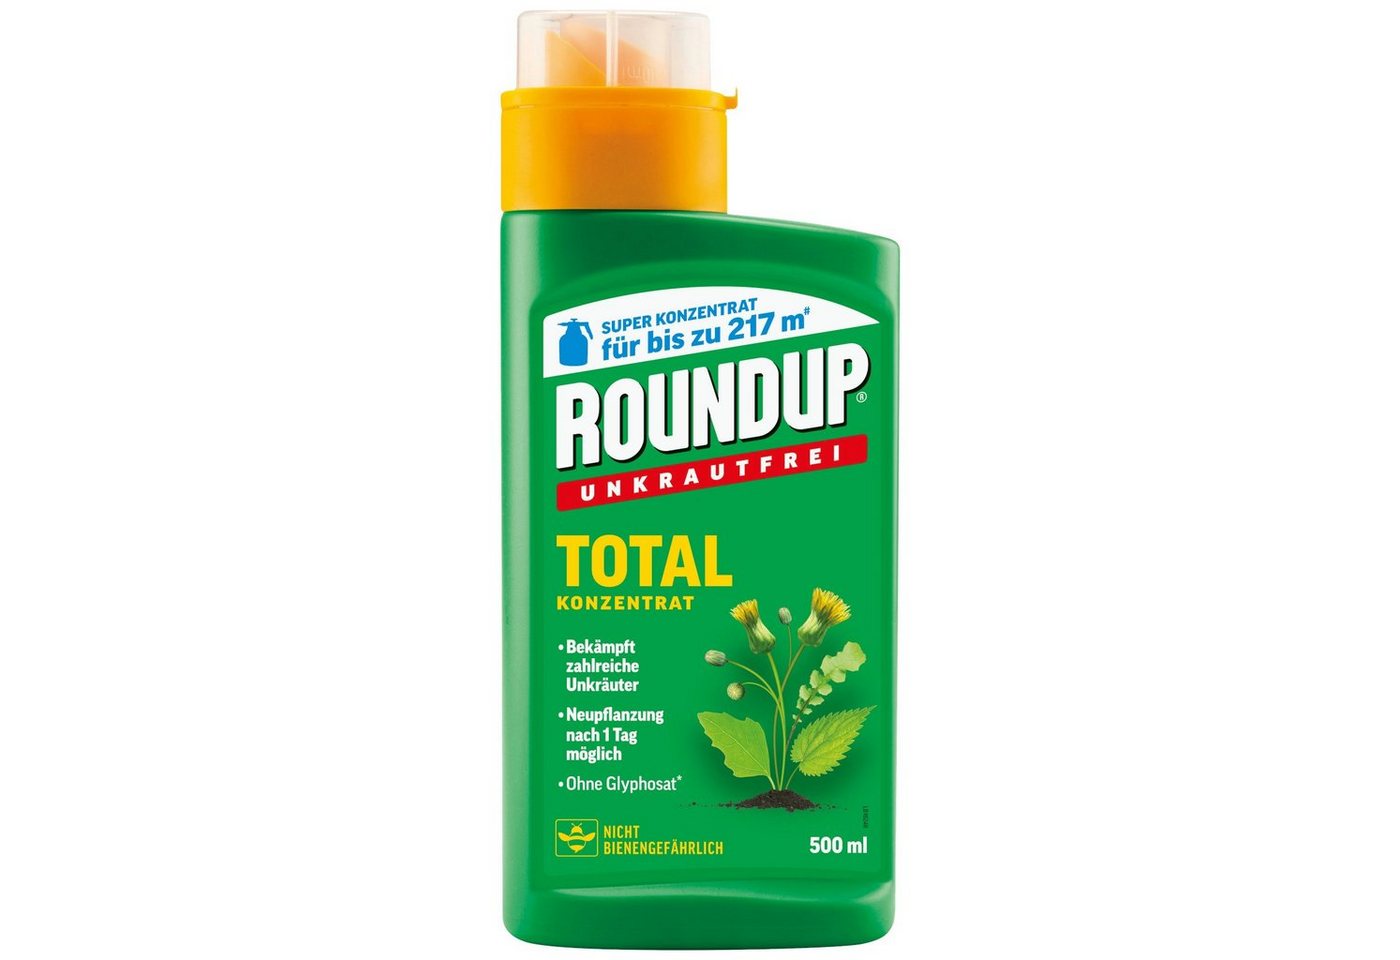 ROUNDUP Unkrautbekämpfungsmittel Unkrautfrei Total Konzentrat - 500 ml von ROUNDUP